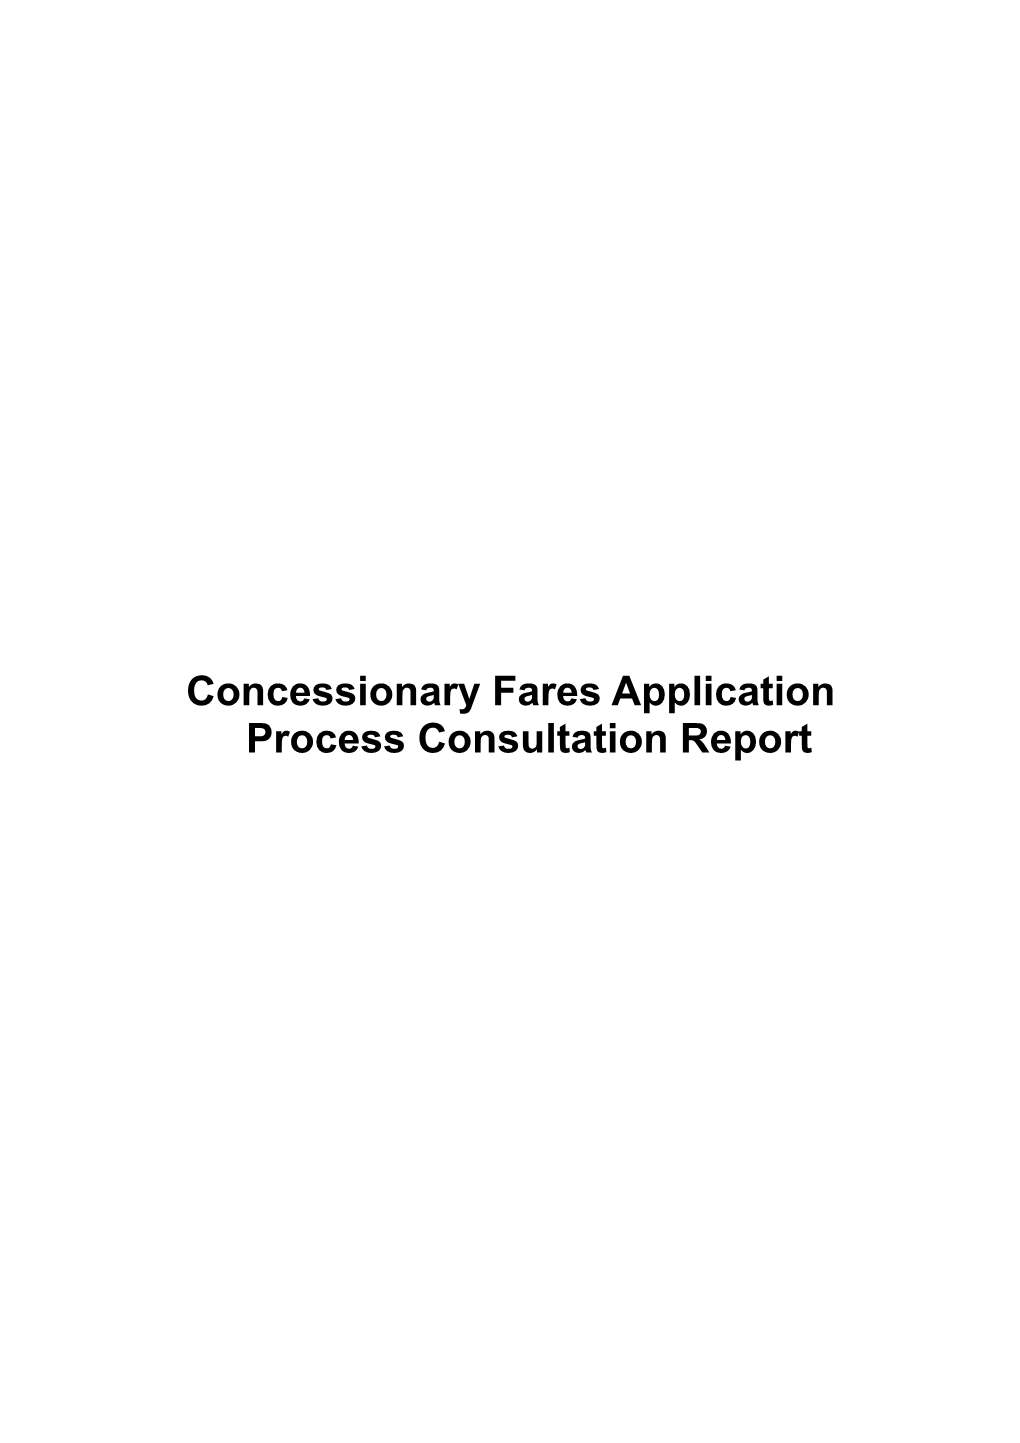 Concessionary Fares Application Process Consultation